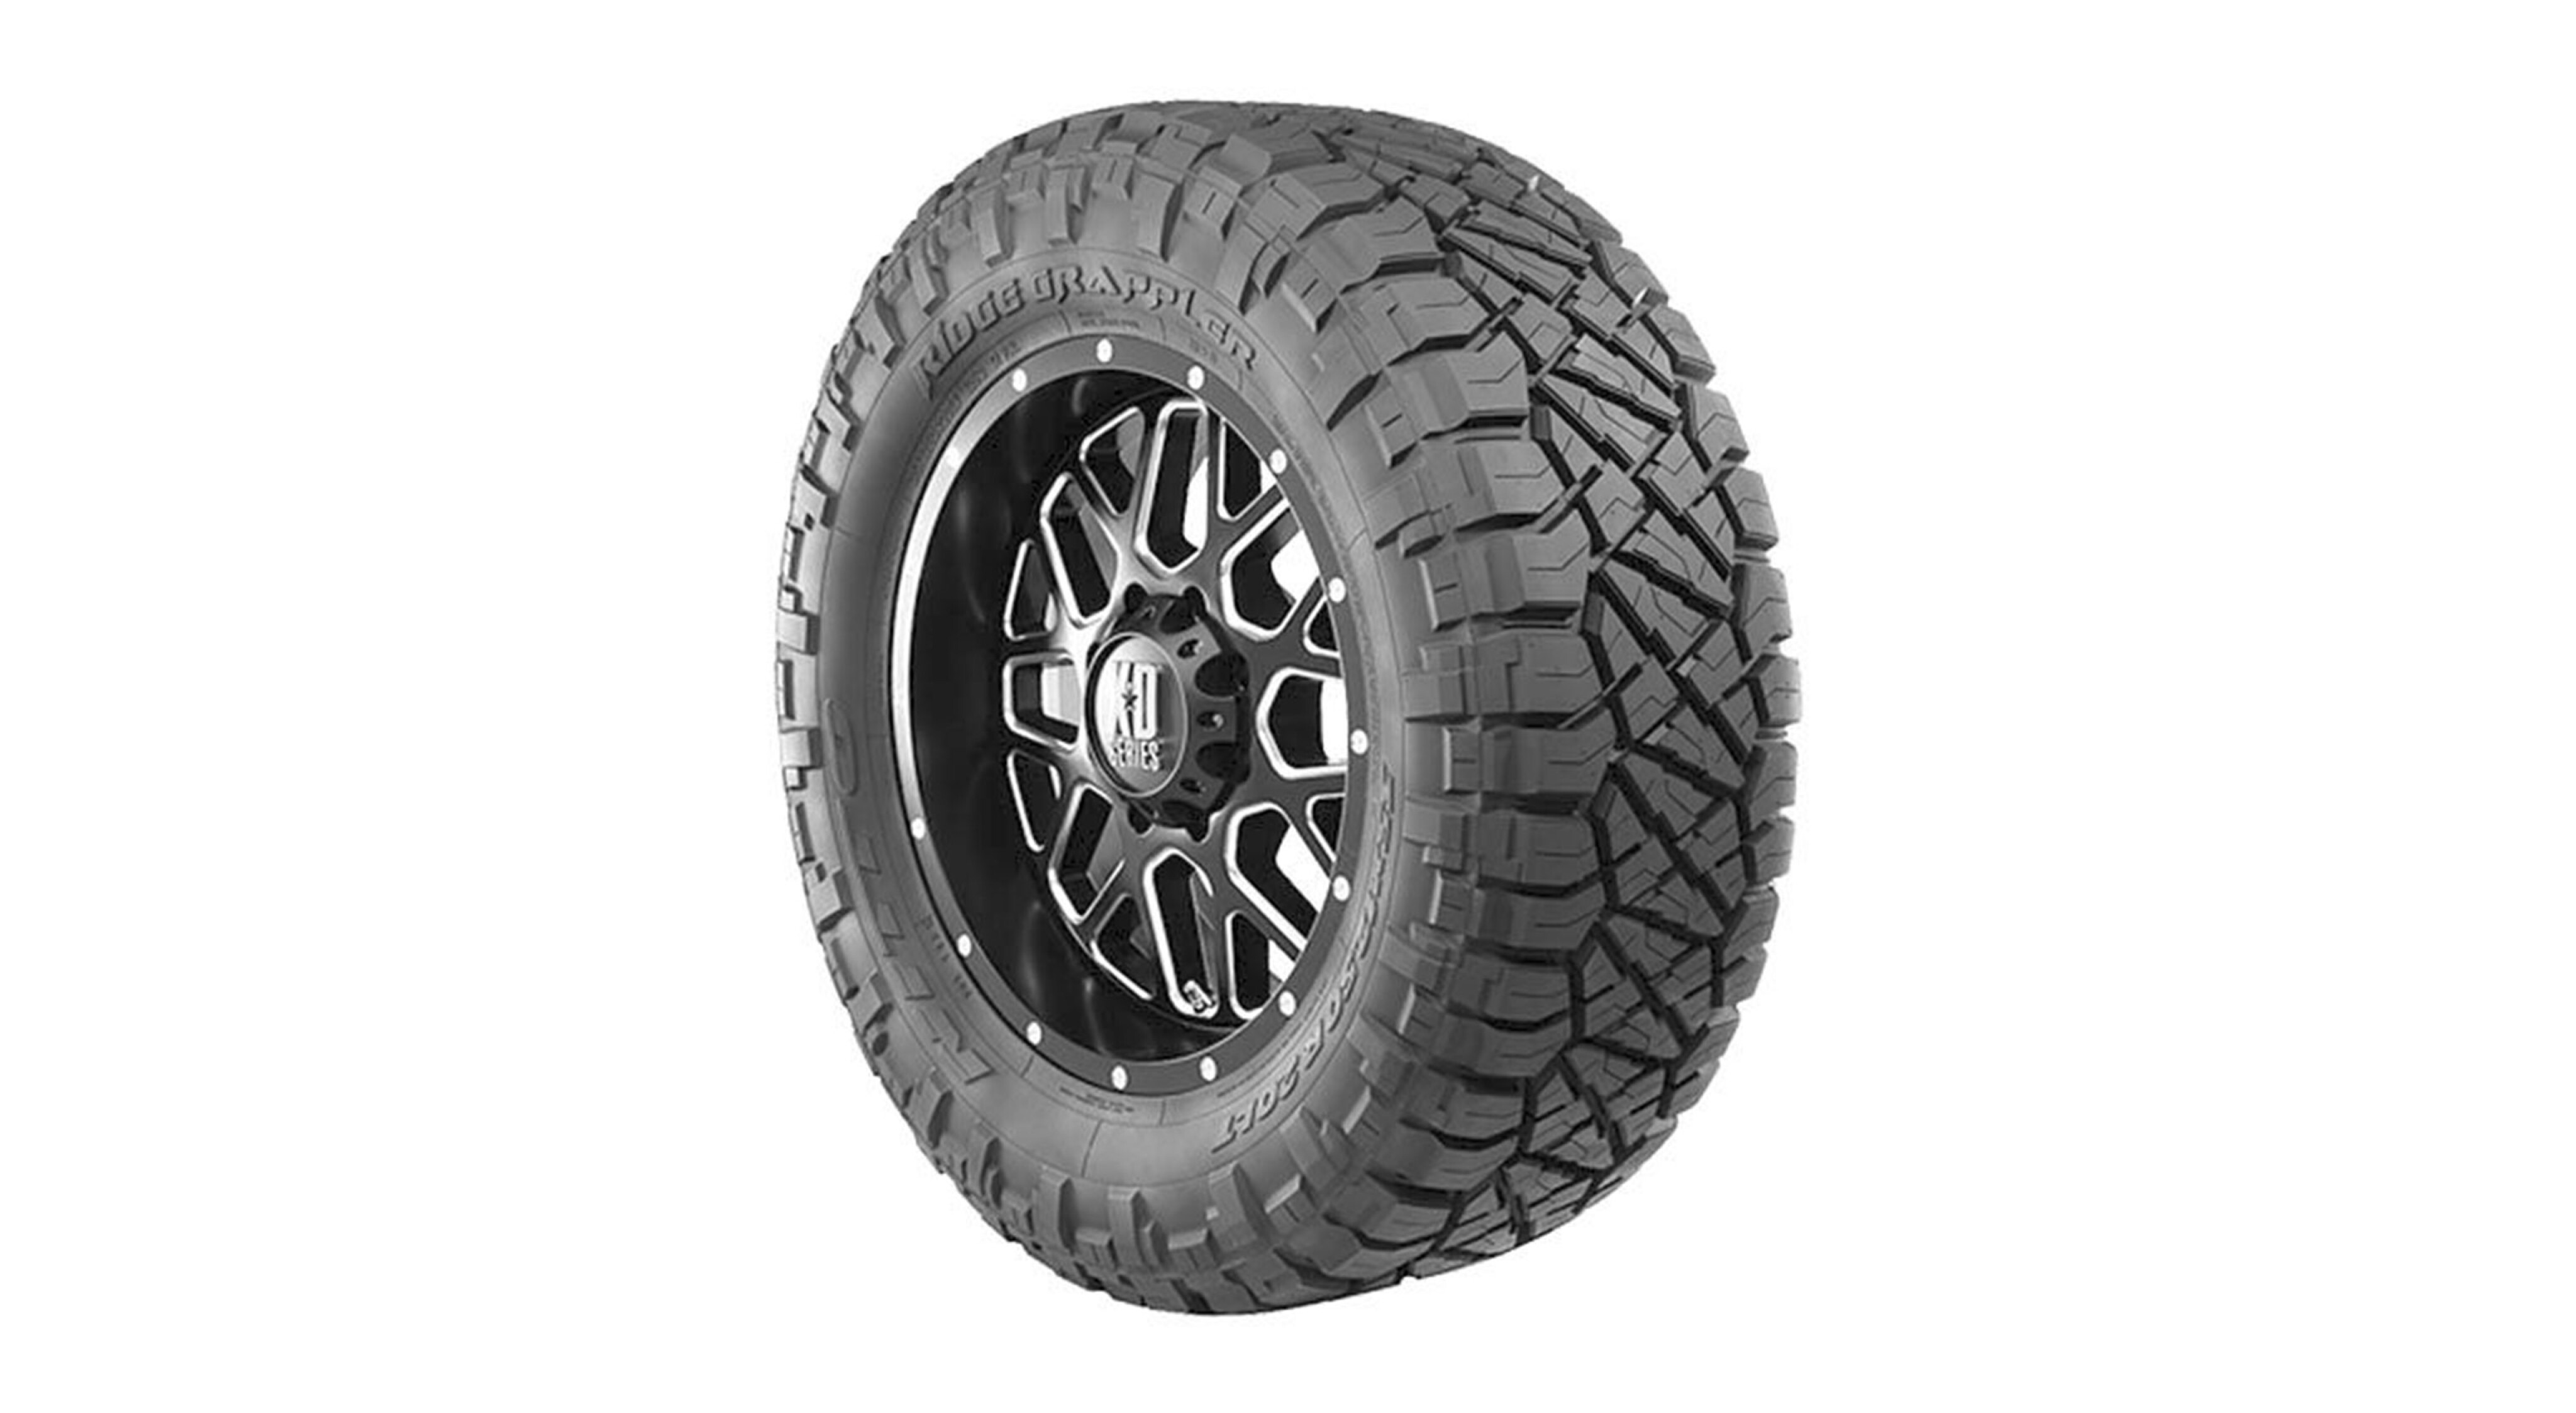 3a1c12e0/ridge grappler best 4x4 tyre jpg